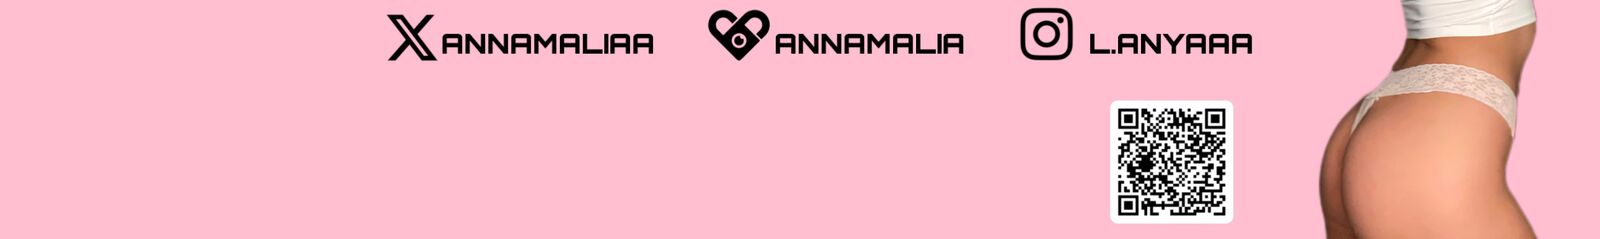 Annamalia